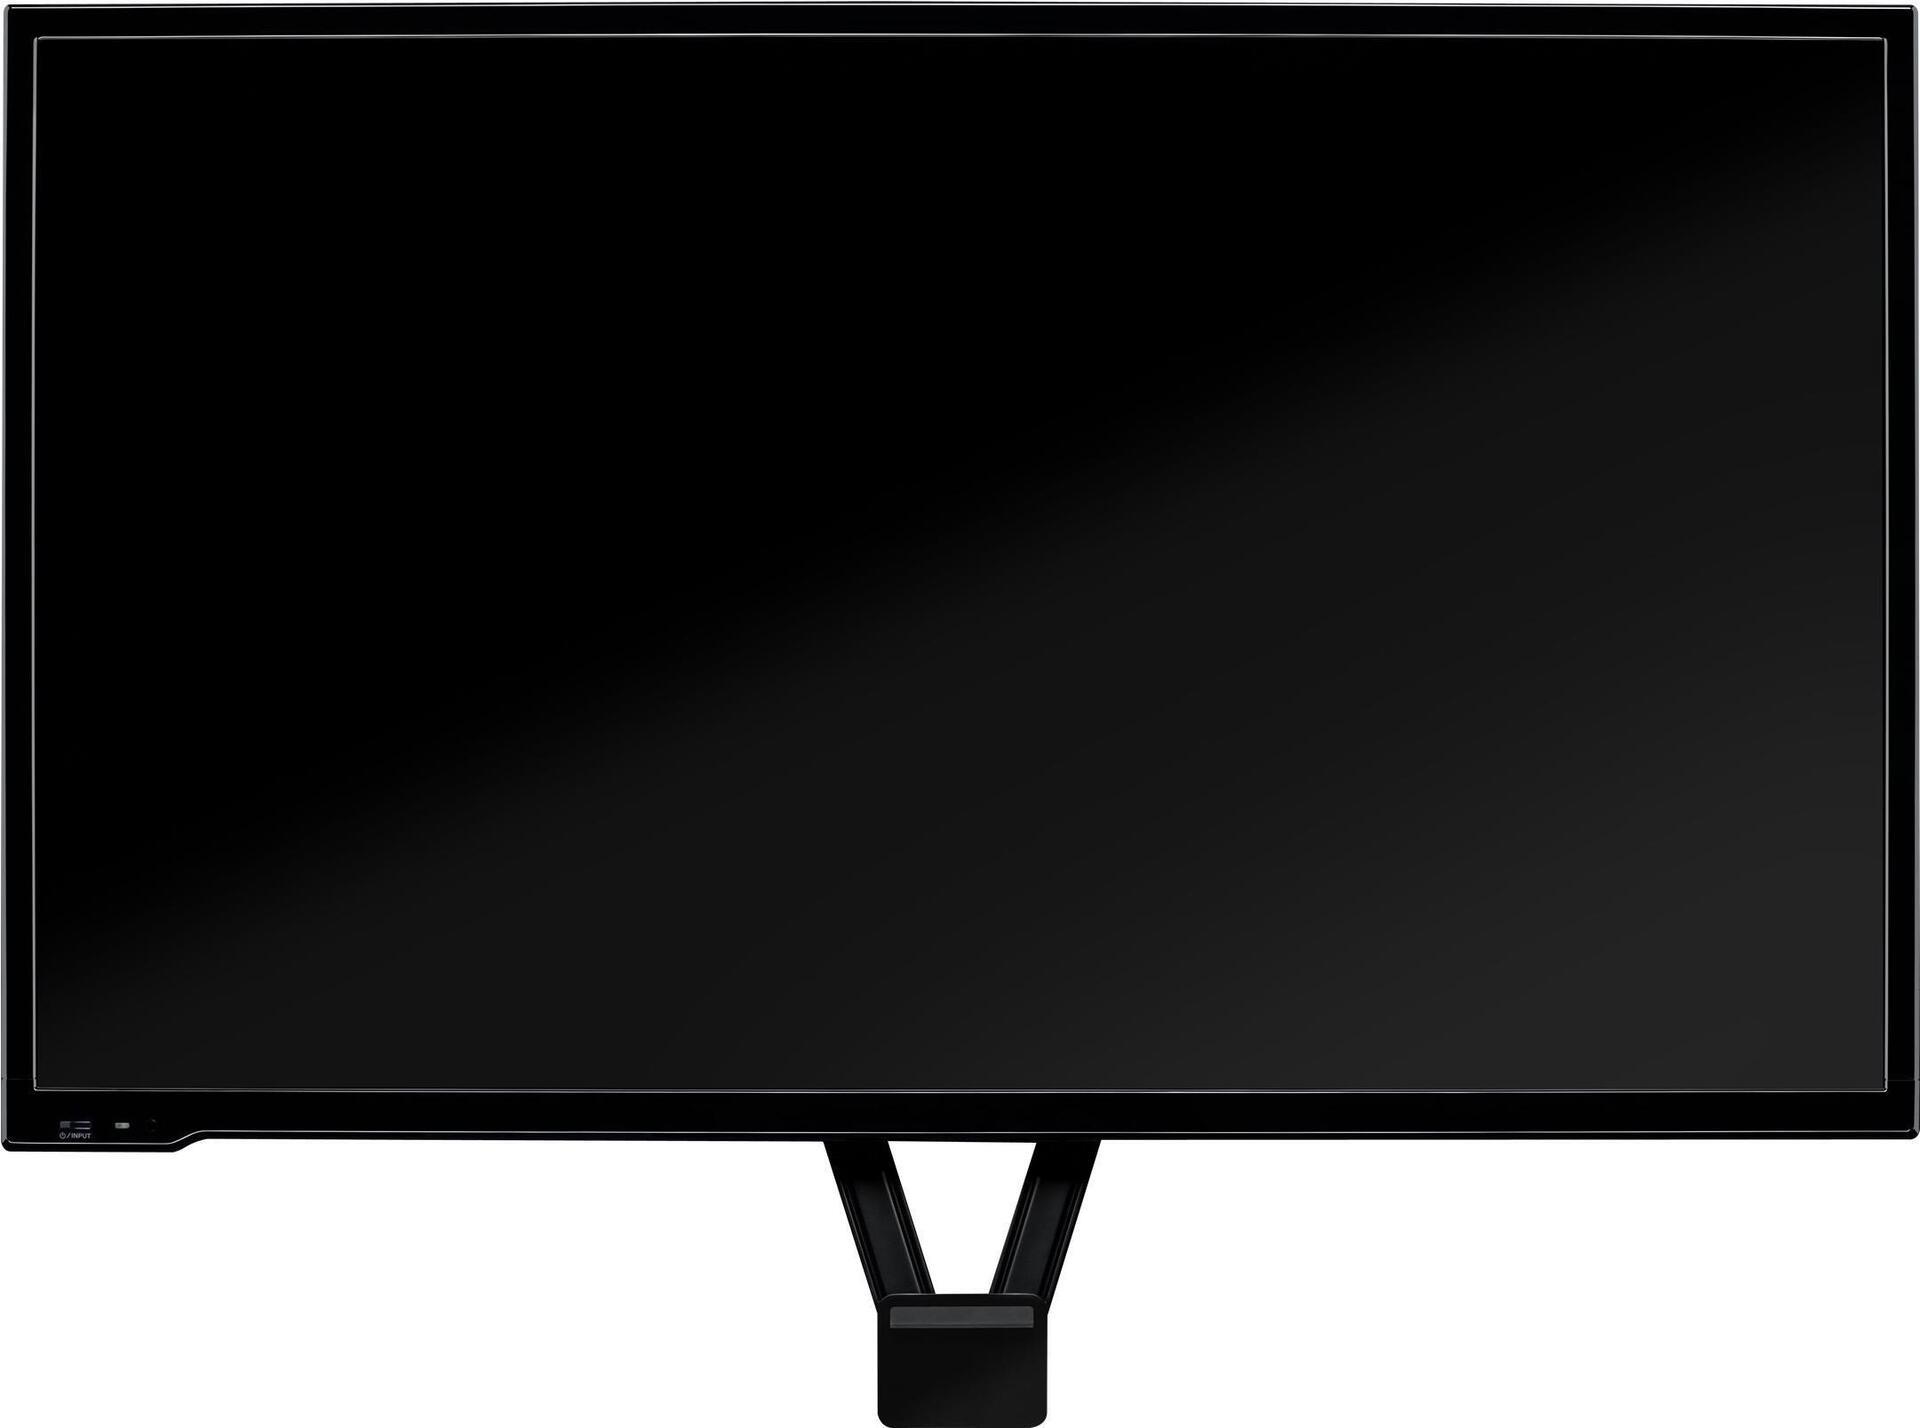 Logitech TV MOUNT FOR MEETUP - Kamerahalterung - on-the-monitor mountable (geöffnet)